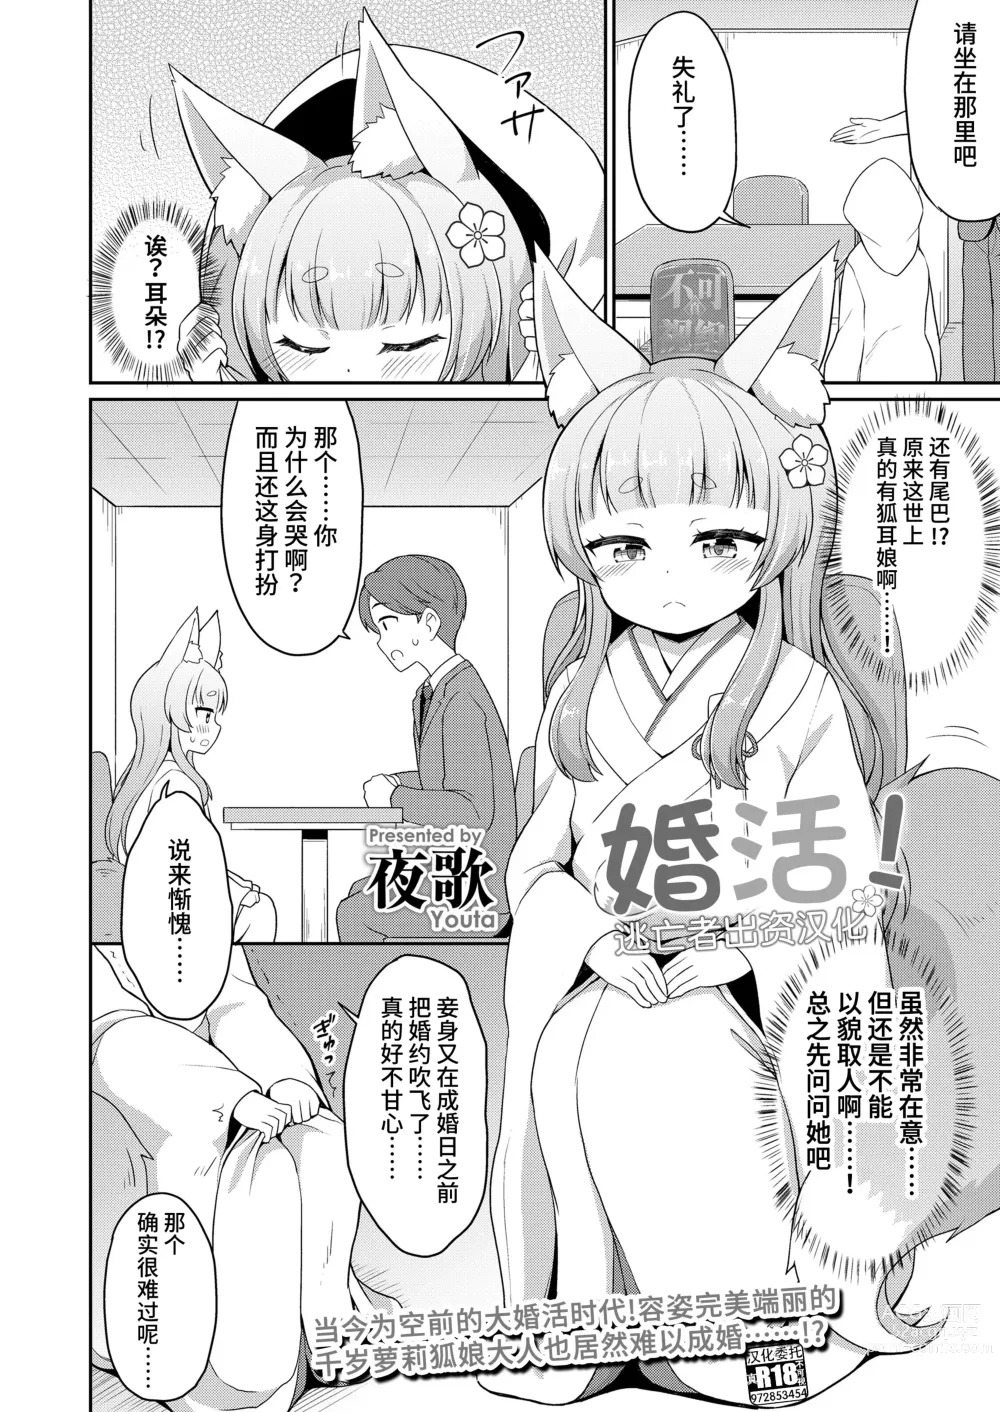 Page 2 of manga 婚活 1-2